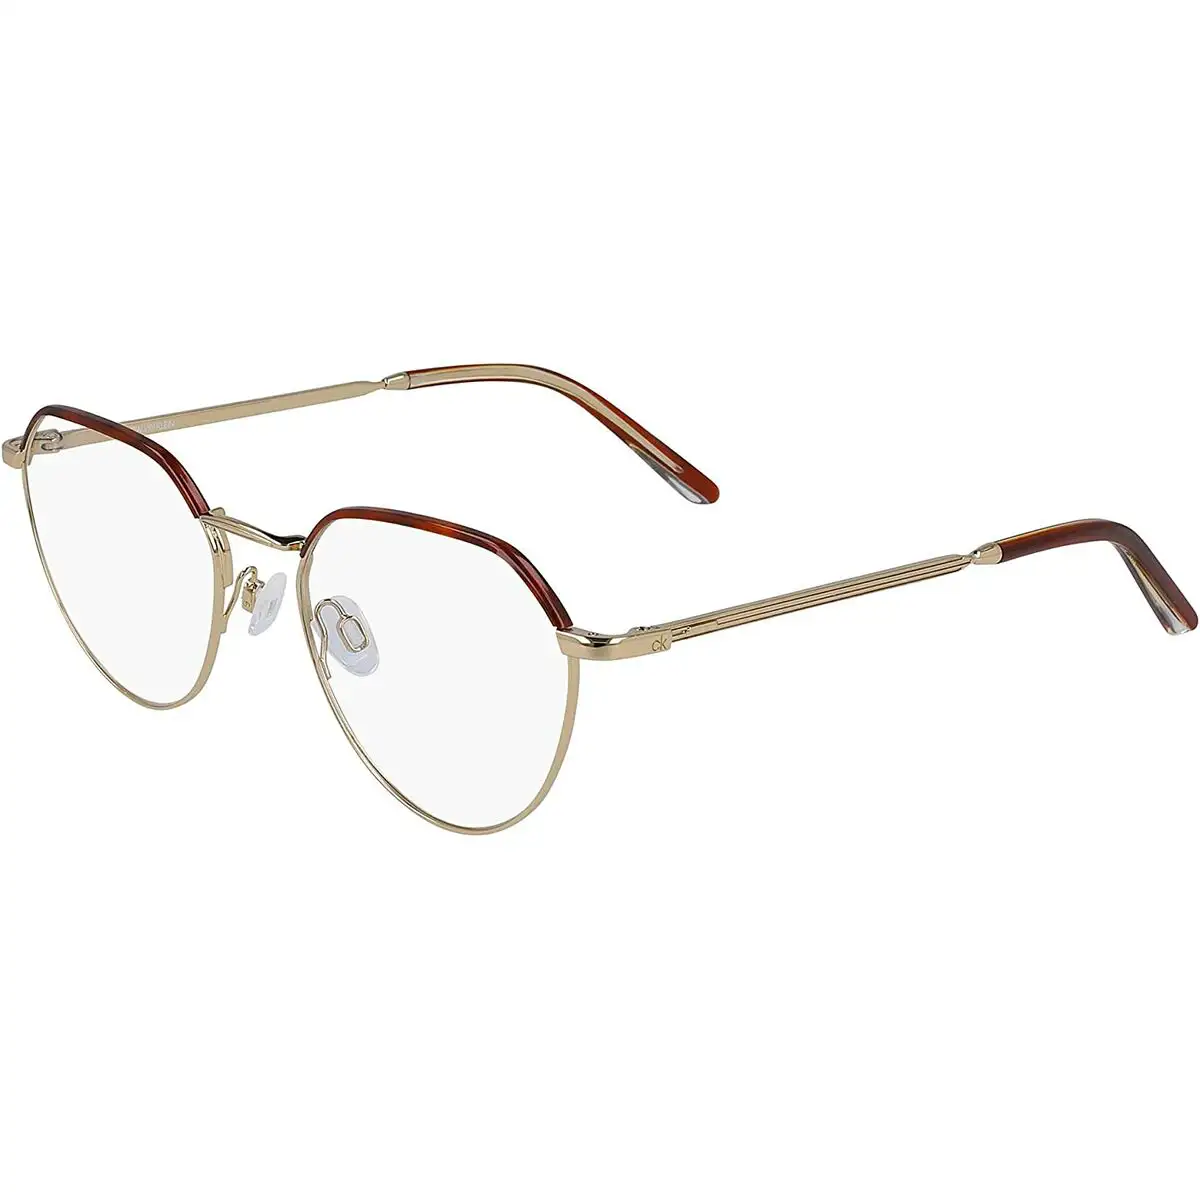 Monture de lunettes homme calvin klein ck20127_7829. DIAYTAR SENEGAL - L'Art de Choisir, l'Art de S'émerveiller. Explorez notre gamme de produits et laissez-vous émerveiller par des créations authentiques et des designs modernes.